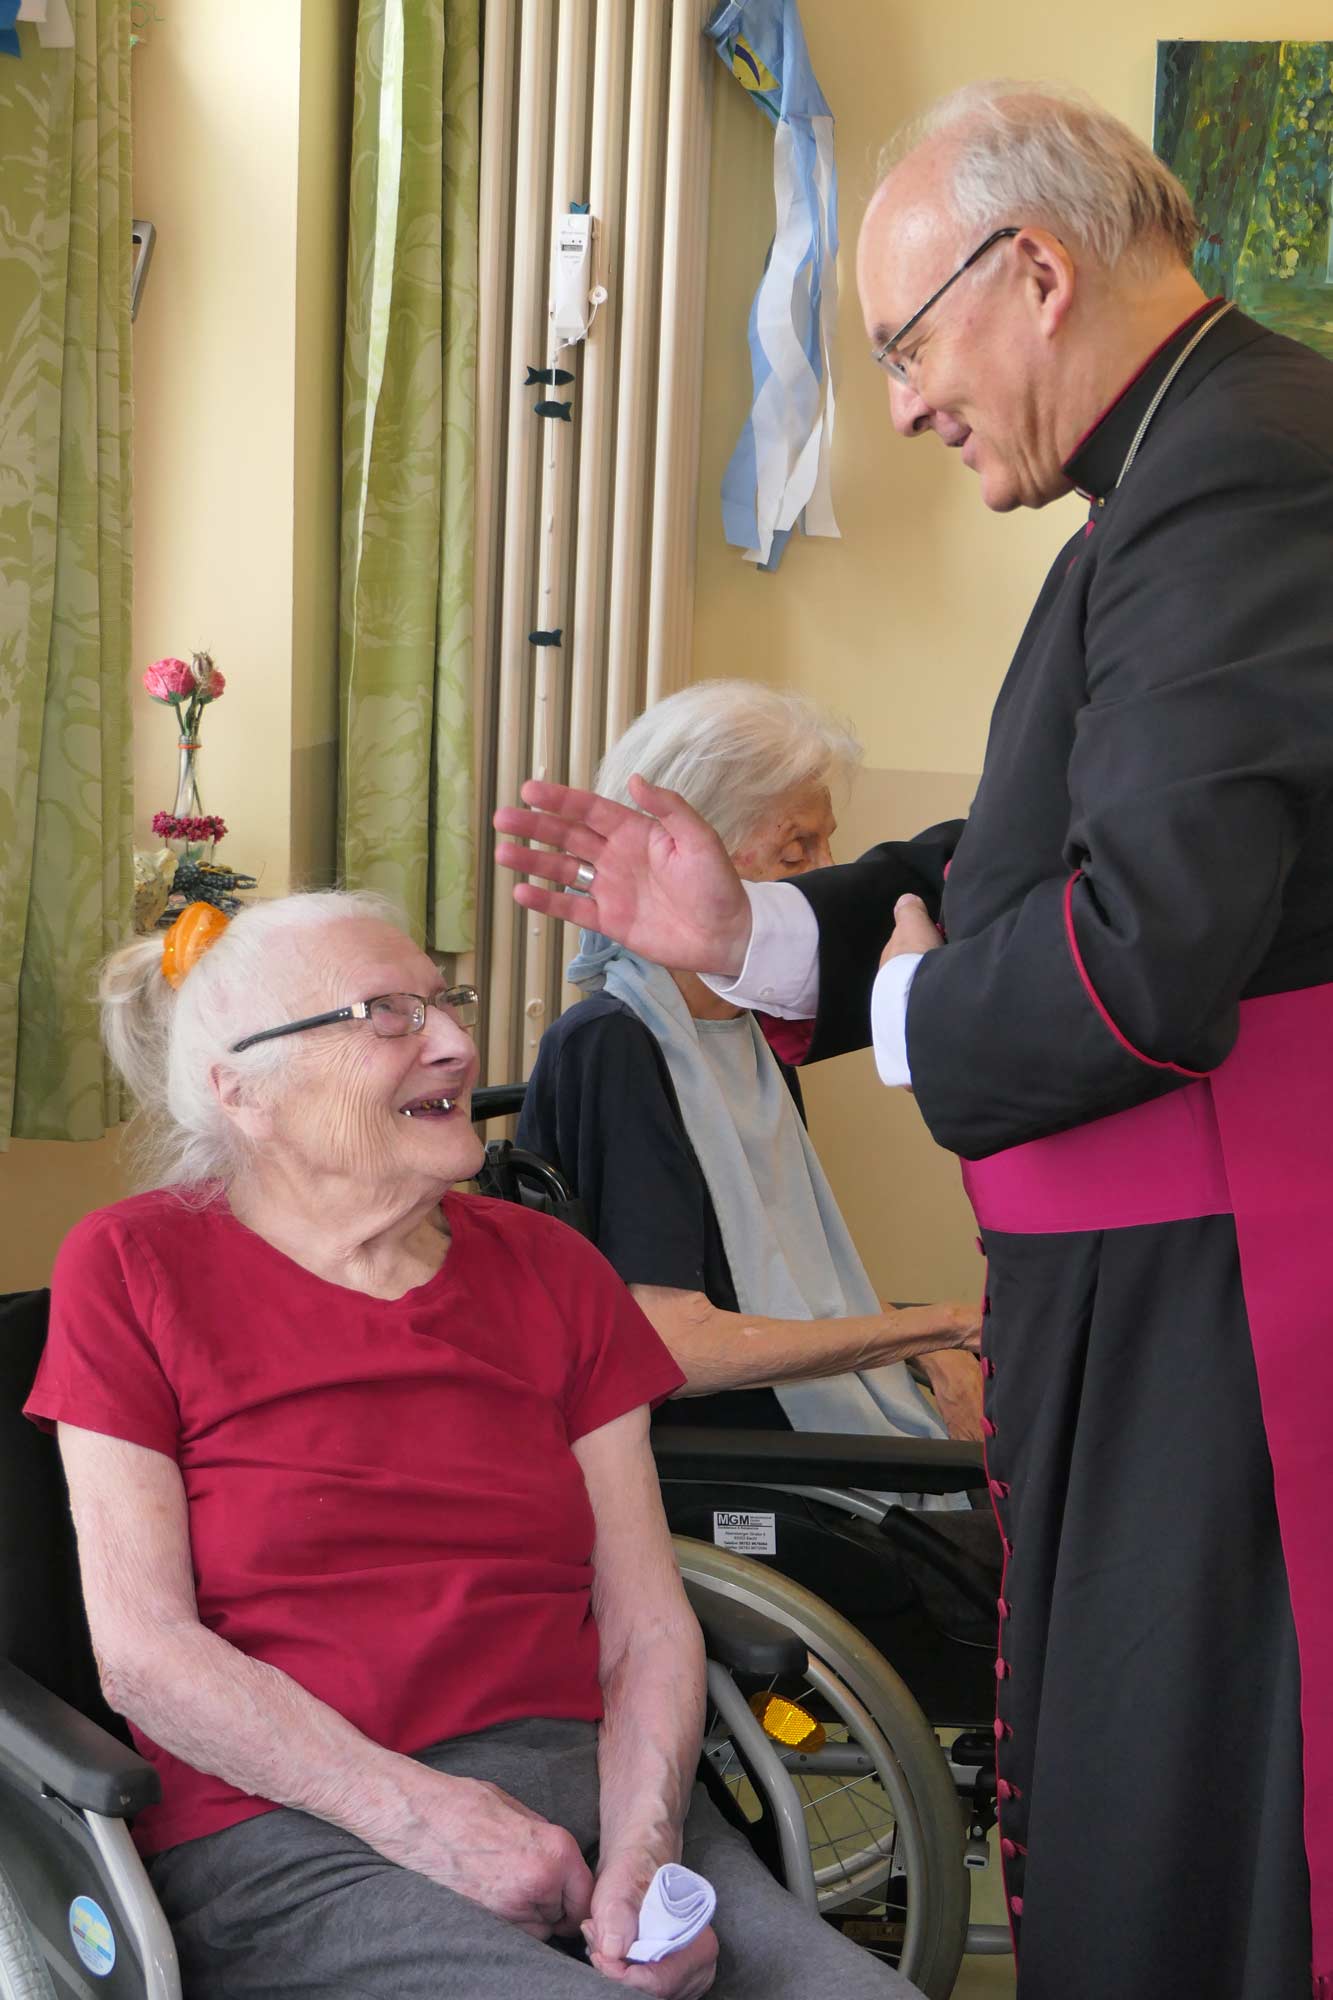 Seniorin im Rollstuhl schenkt Bischof ein Lächeln